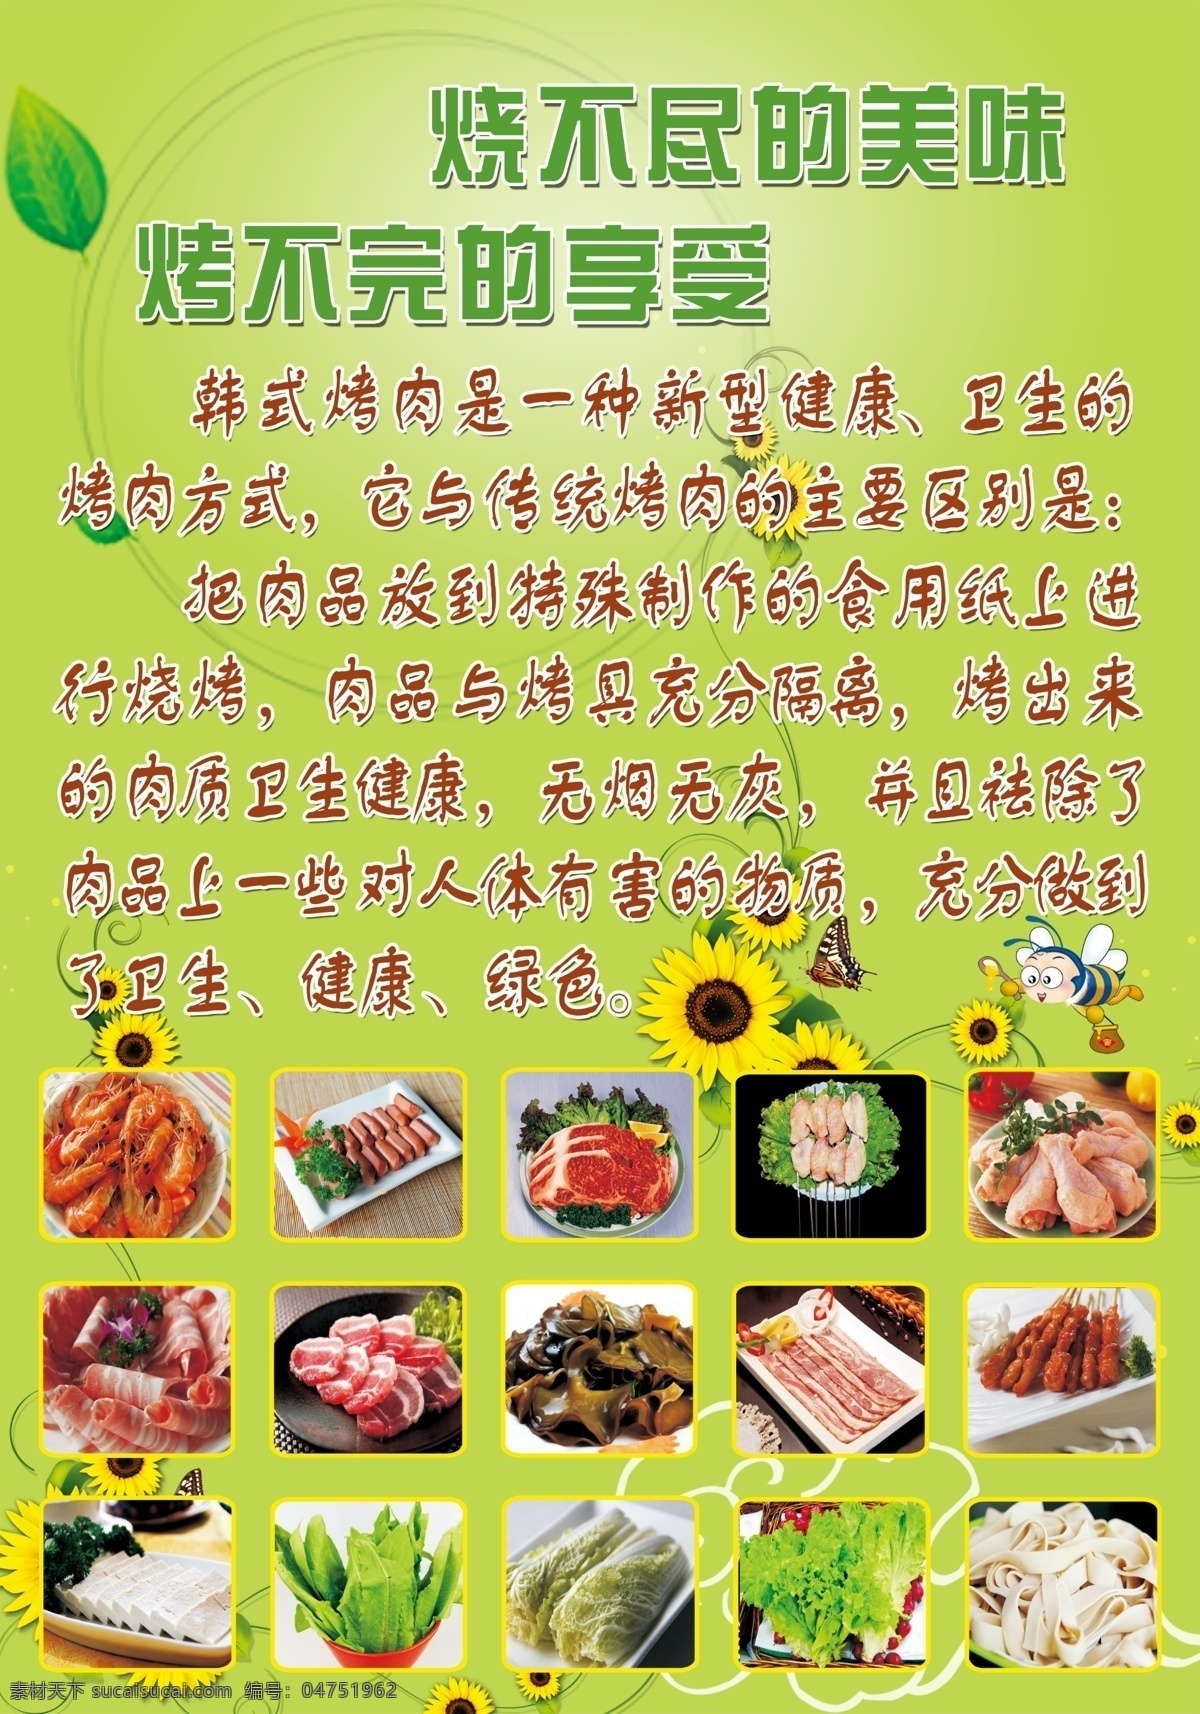 韩国 纸 上 烤肉 特色 烧烤 绿色背景 健康 卫生 绿色 广告设计模板 源文件